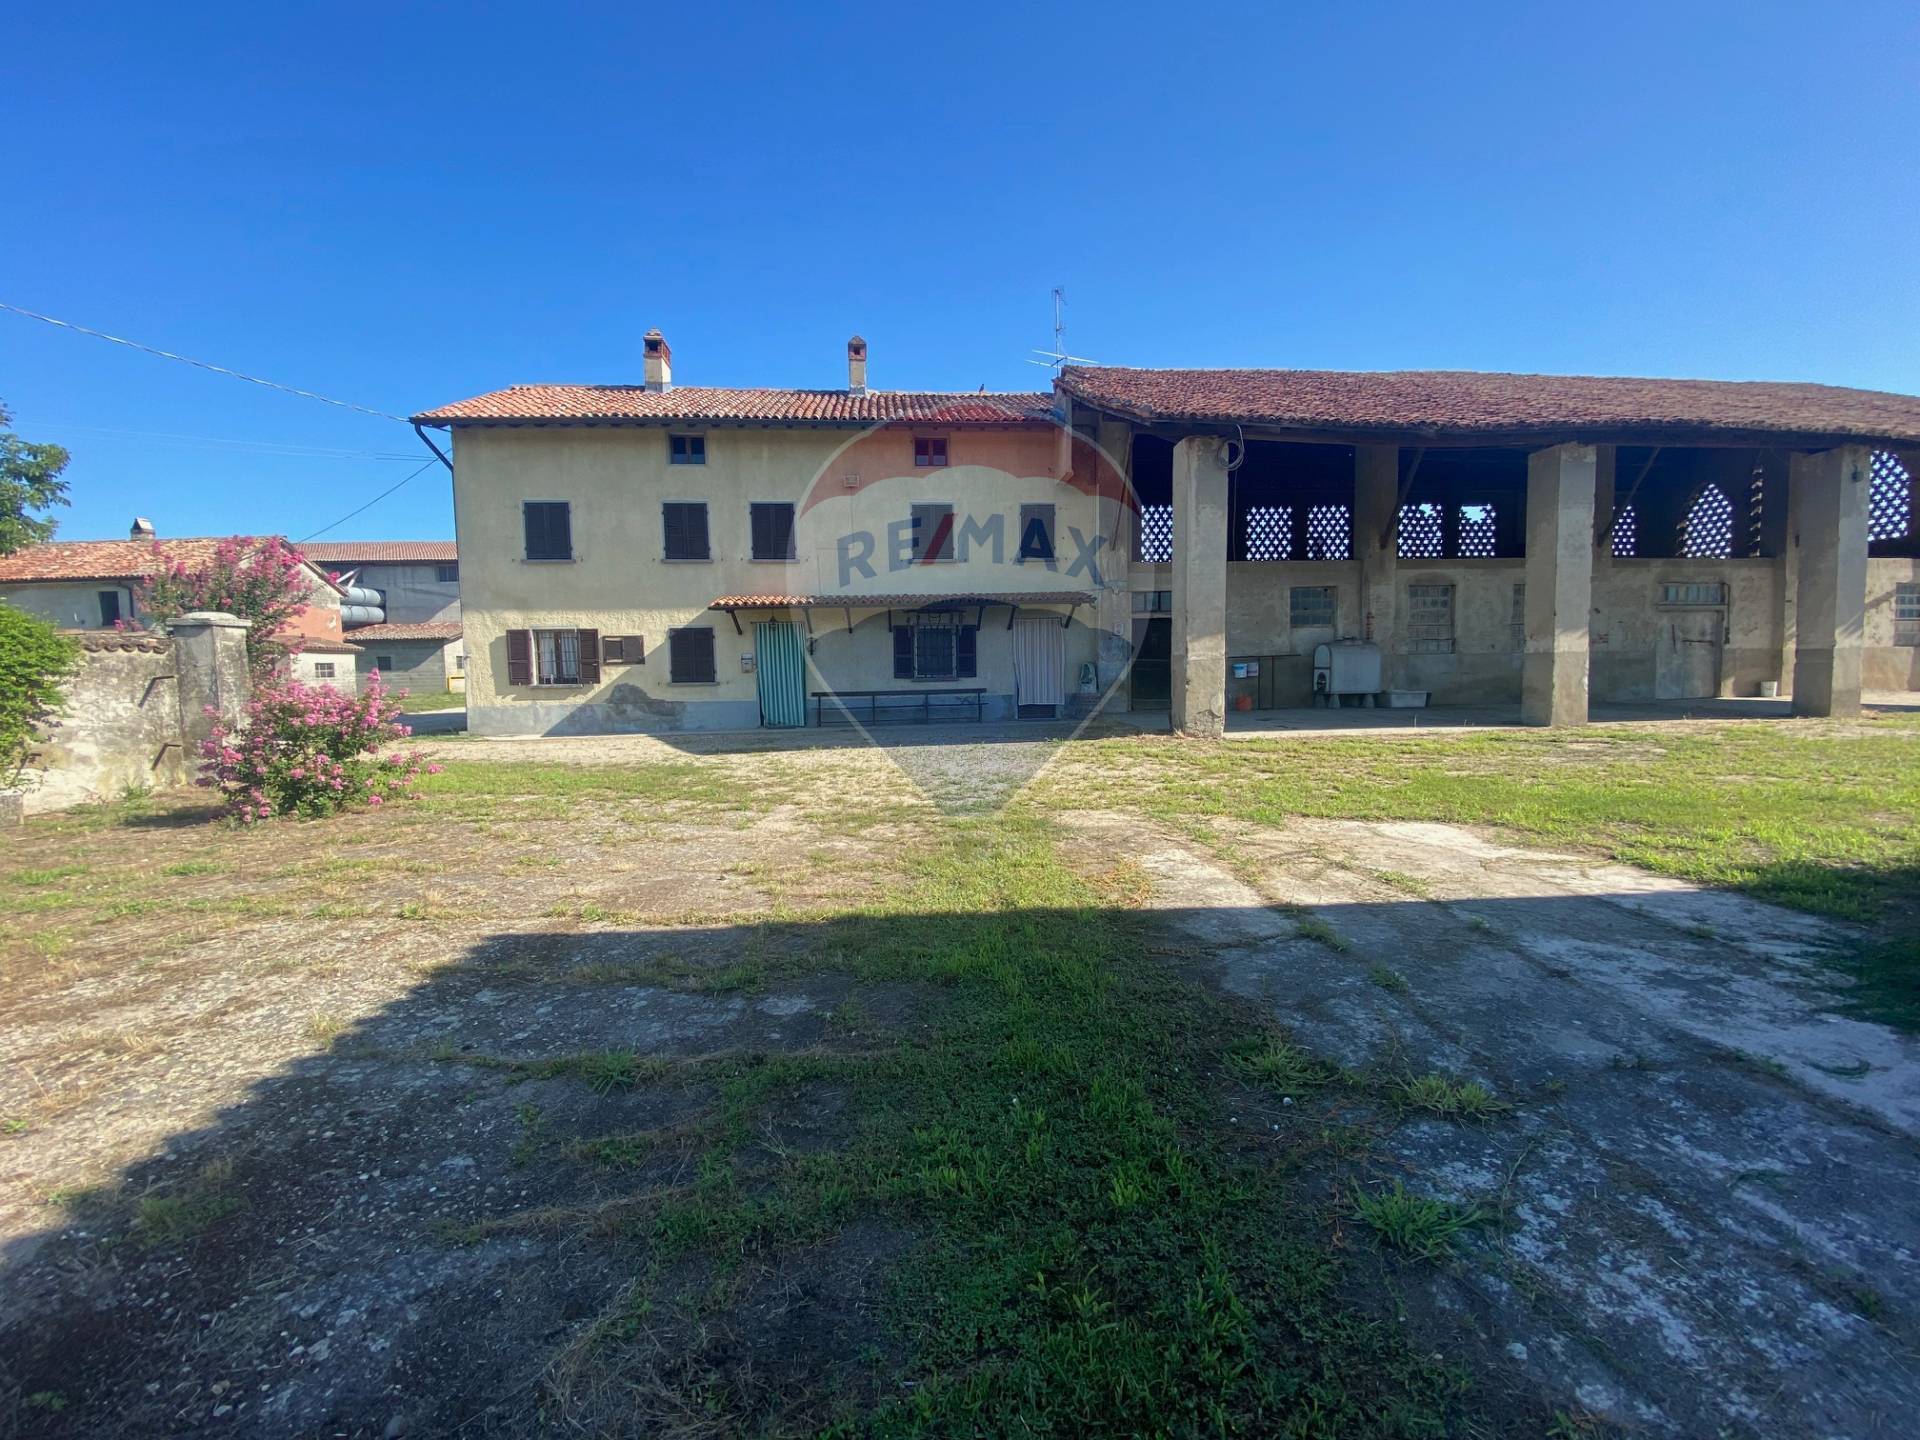 Rustico / Casale in vendita a Gropello Cairoli, 10 locali, prezzo € 220.000 | PortaleAgenzieImmobiliari.it